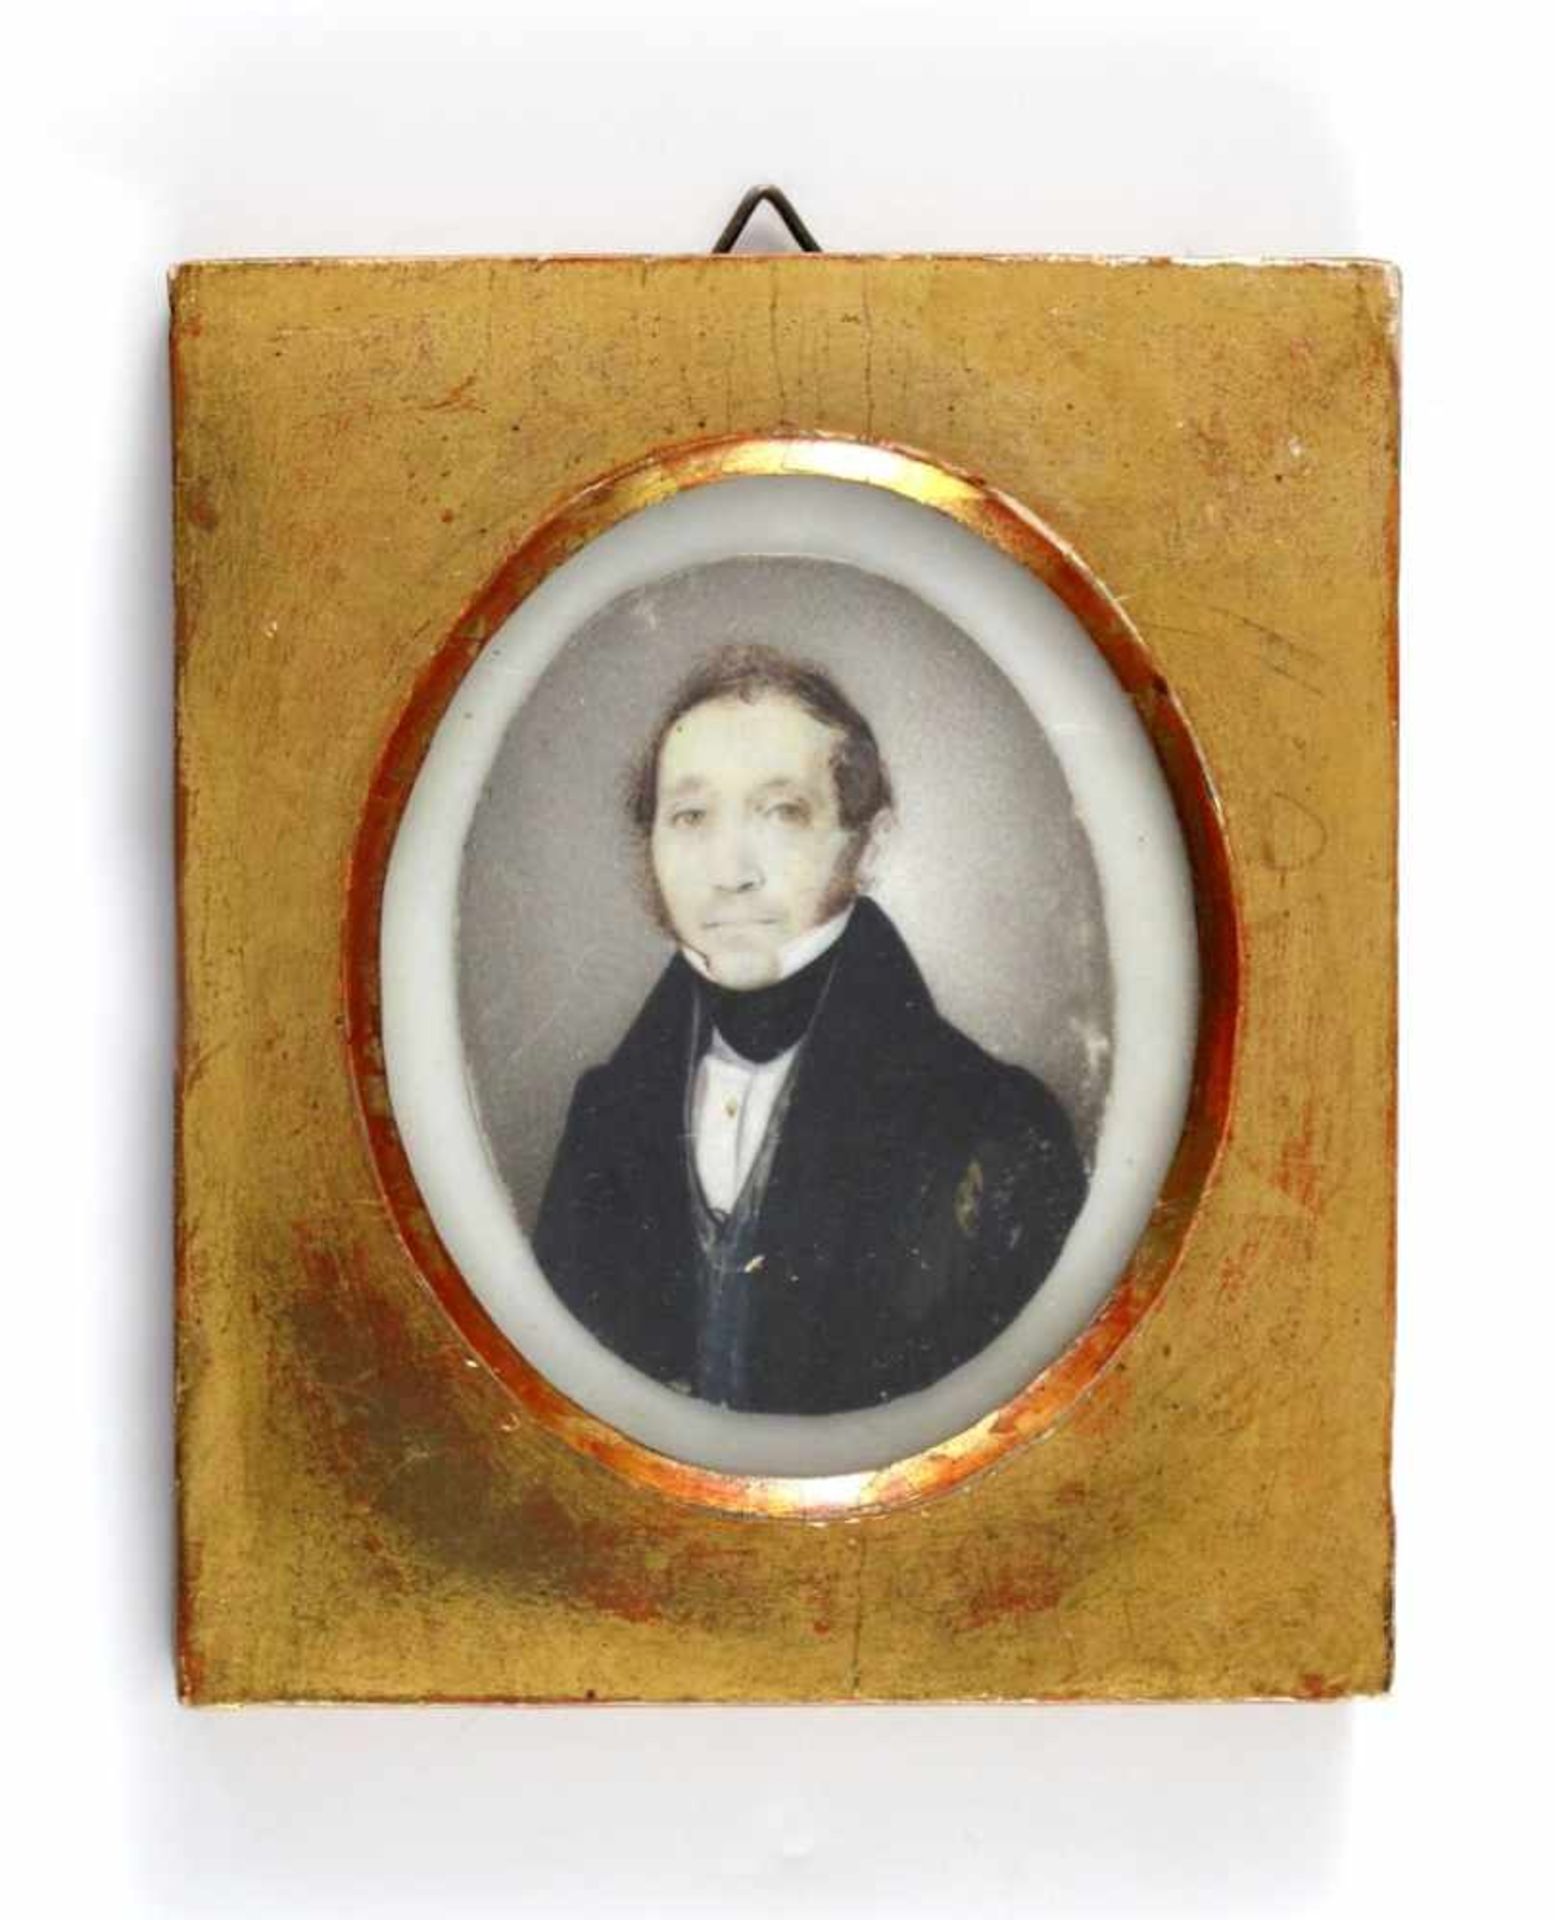 Miniatur: Herrenportrait. Auf Elfenbein. Um 1850. Oval, 6,5 x 5 cm. R